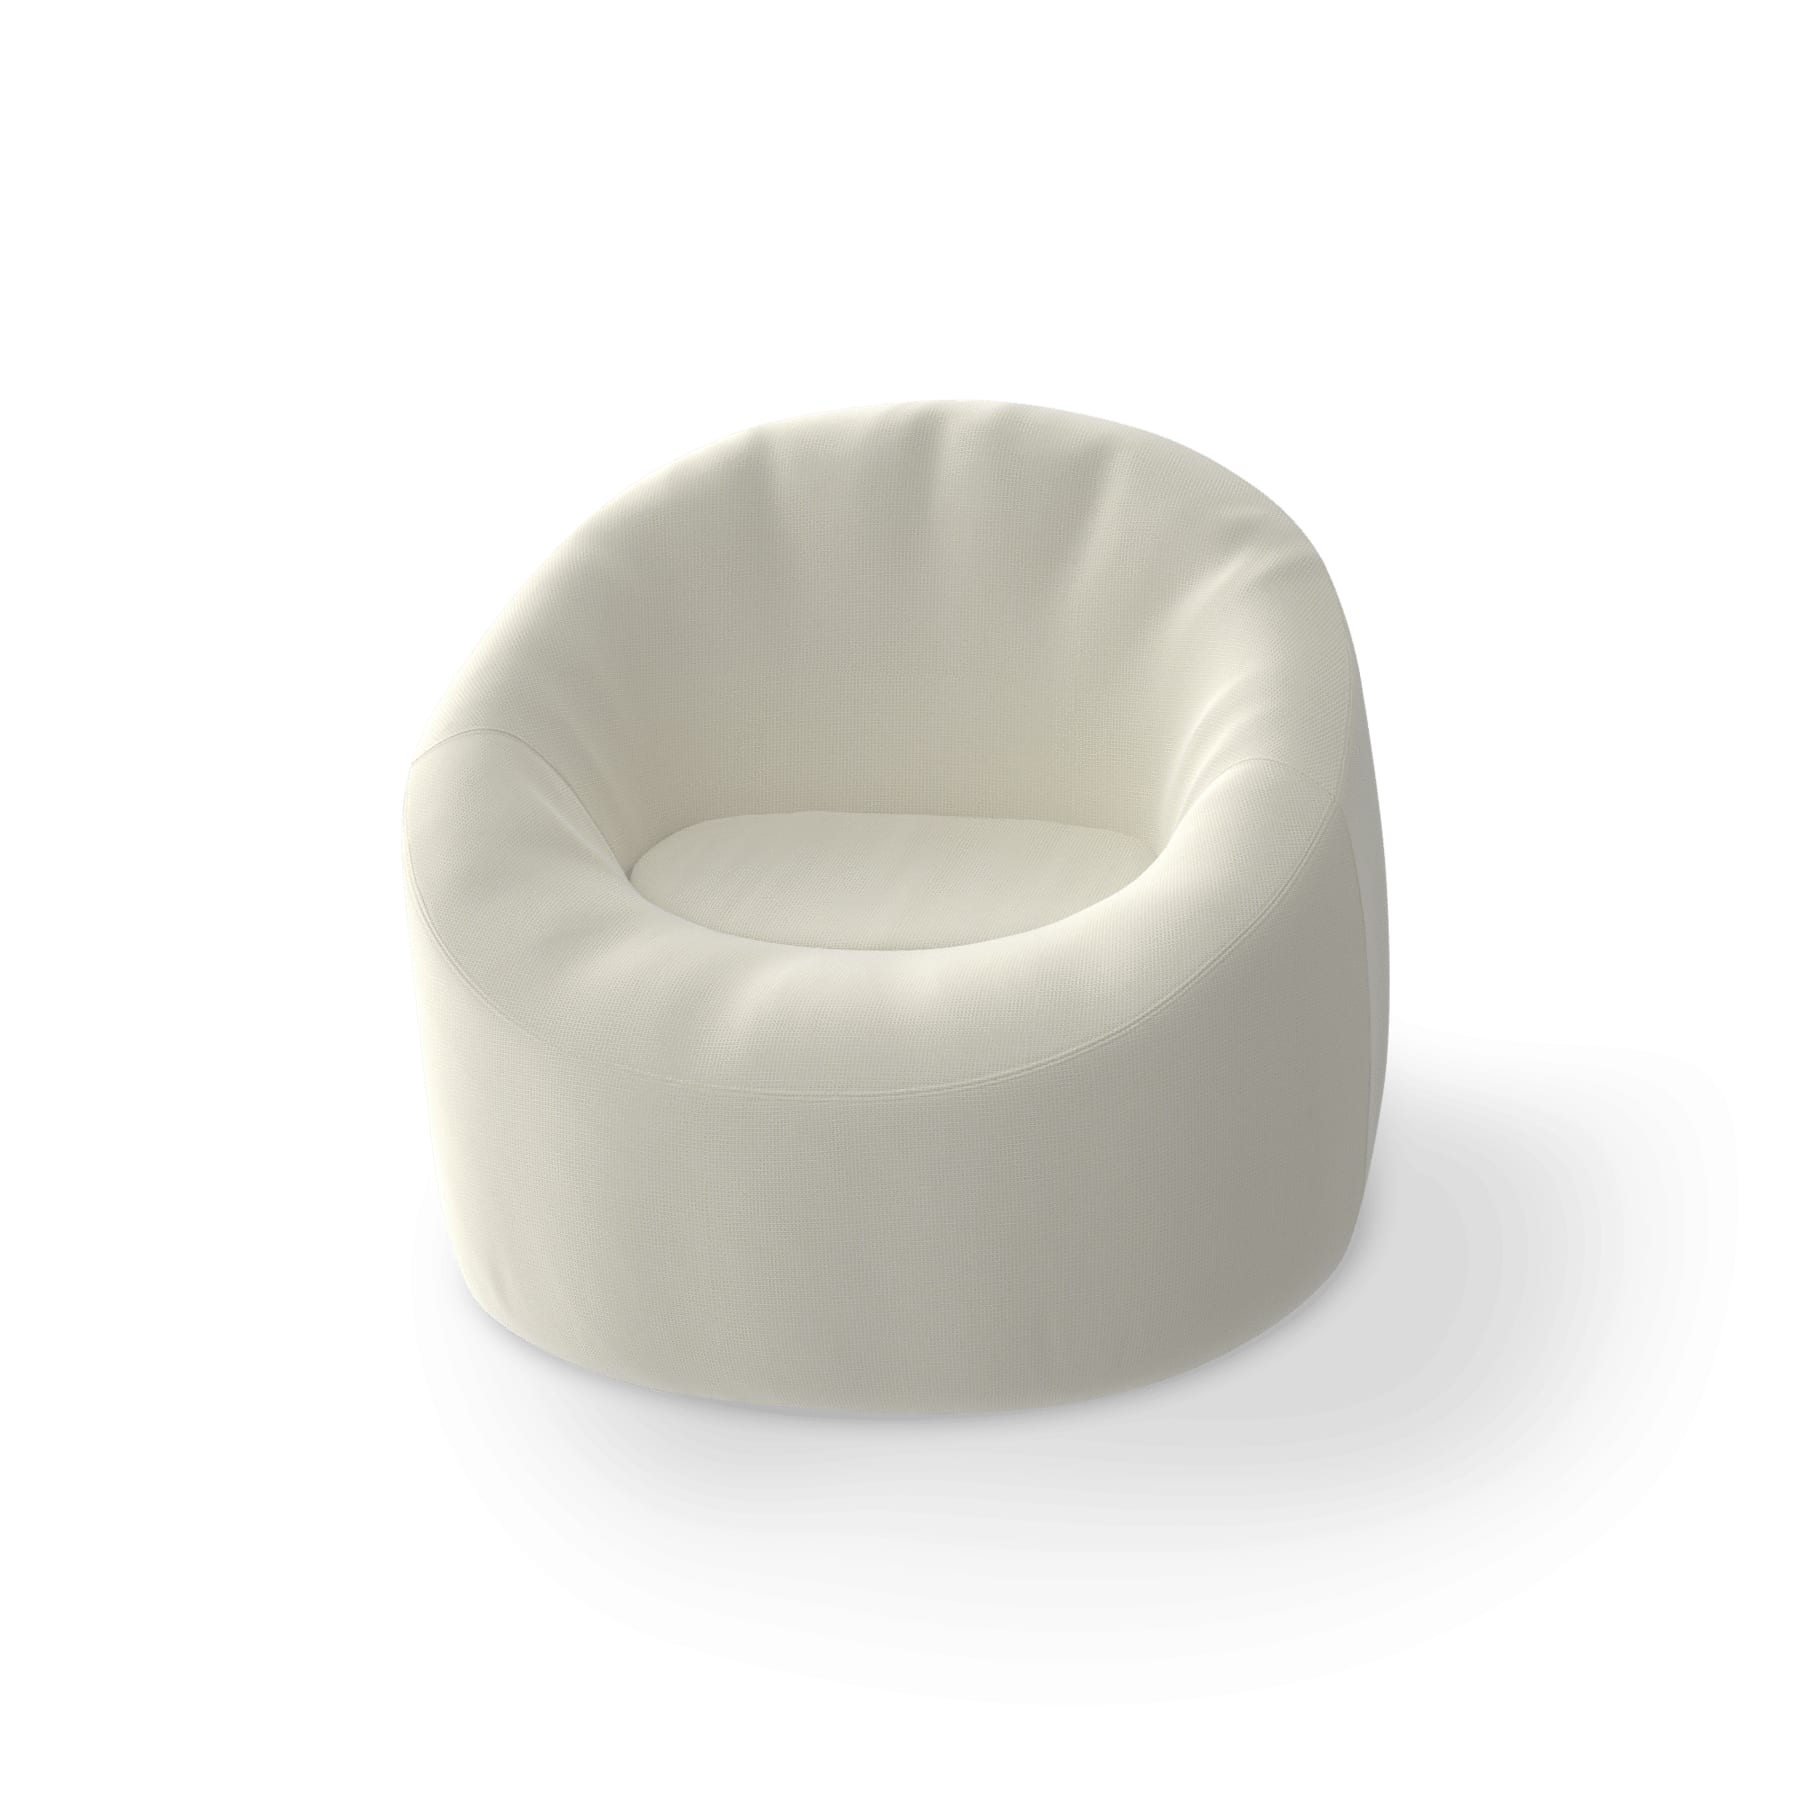 Chaise gonflable flottante en tissu imperméable blanc